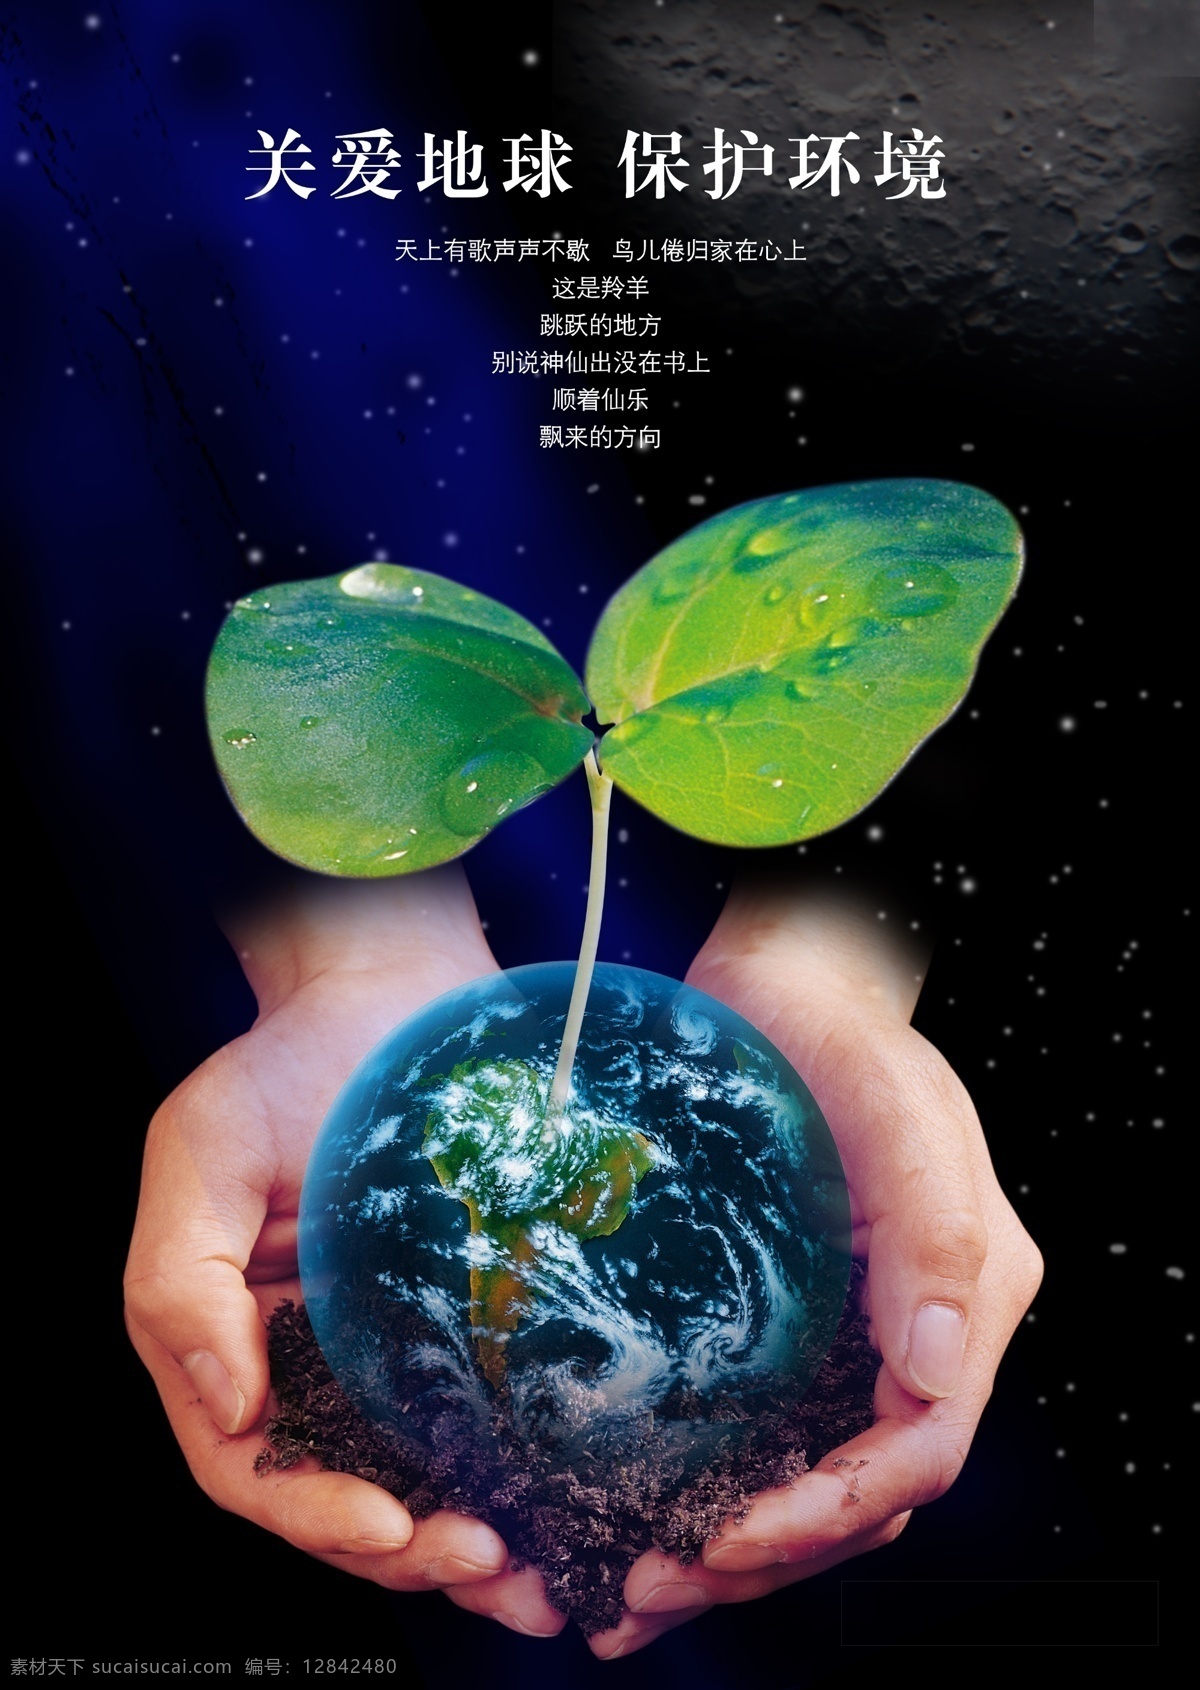 环保 创意 宣传海报 宣传 海报 保护 环境 关爱 地球 手 绿叶